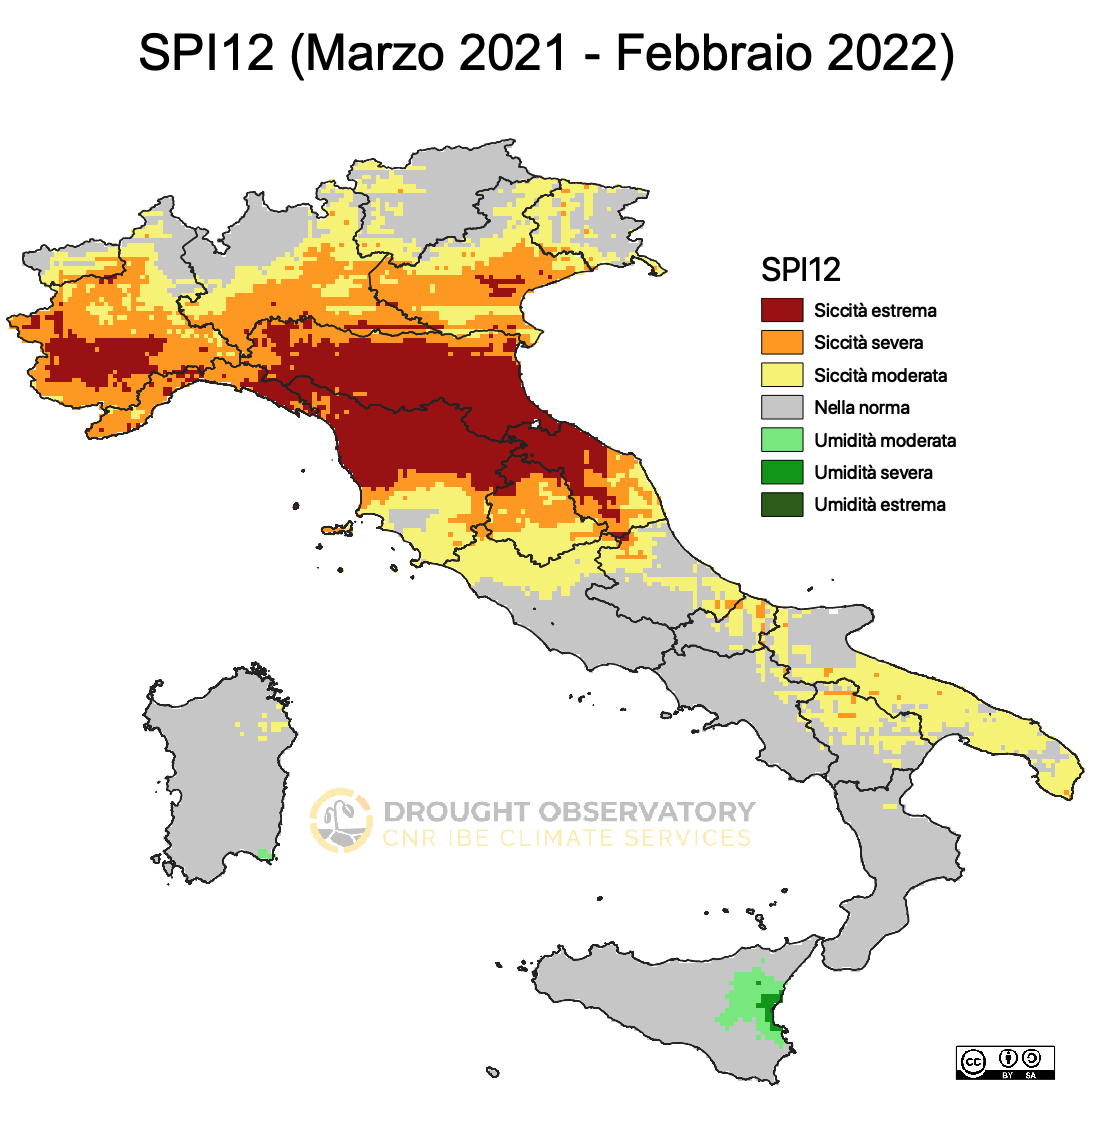 Pluviometria in Toscana (foto del Drought Observatory). Dal sito https://drought.climateservices.it/bollettino/situazione-siccita-febbraio-2022/